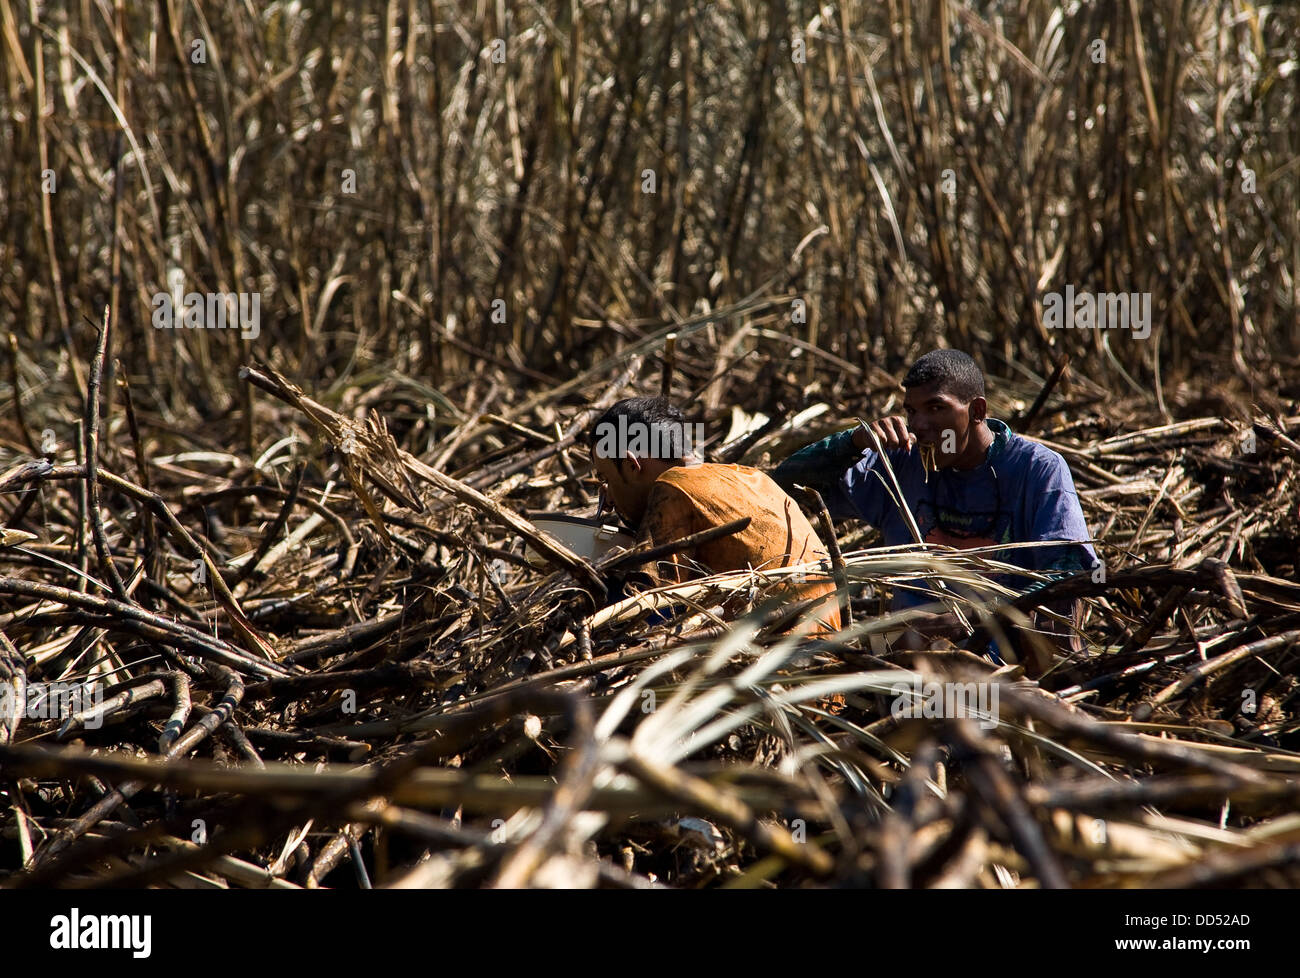 Cortadores de caña de azúcar, plantaciones de caña de azúcar almuerzo bajo el sol Foto de stock